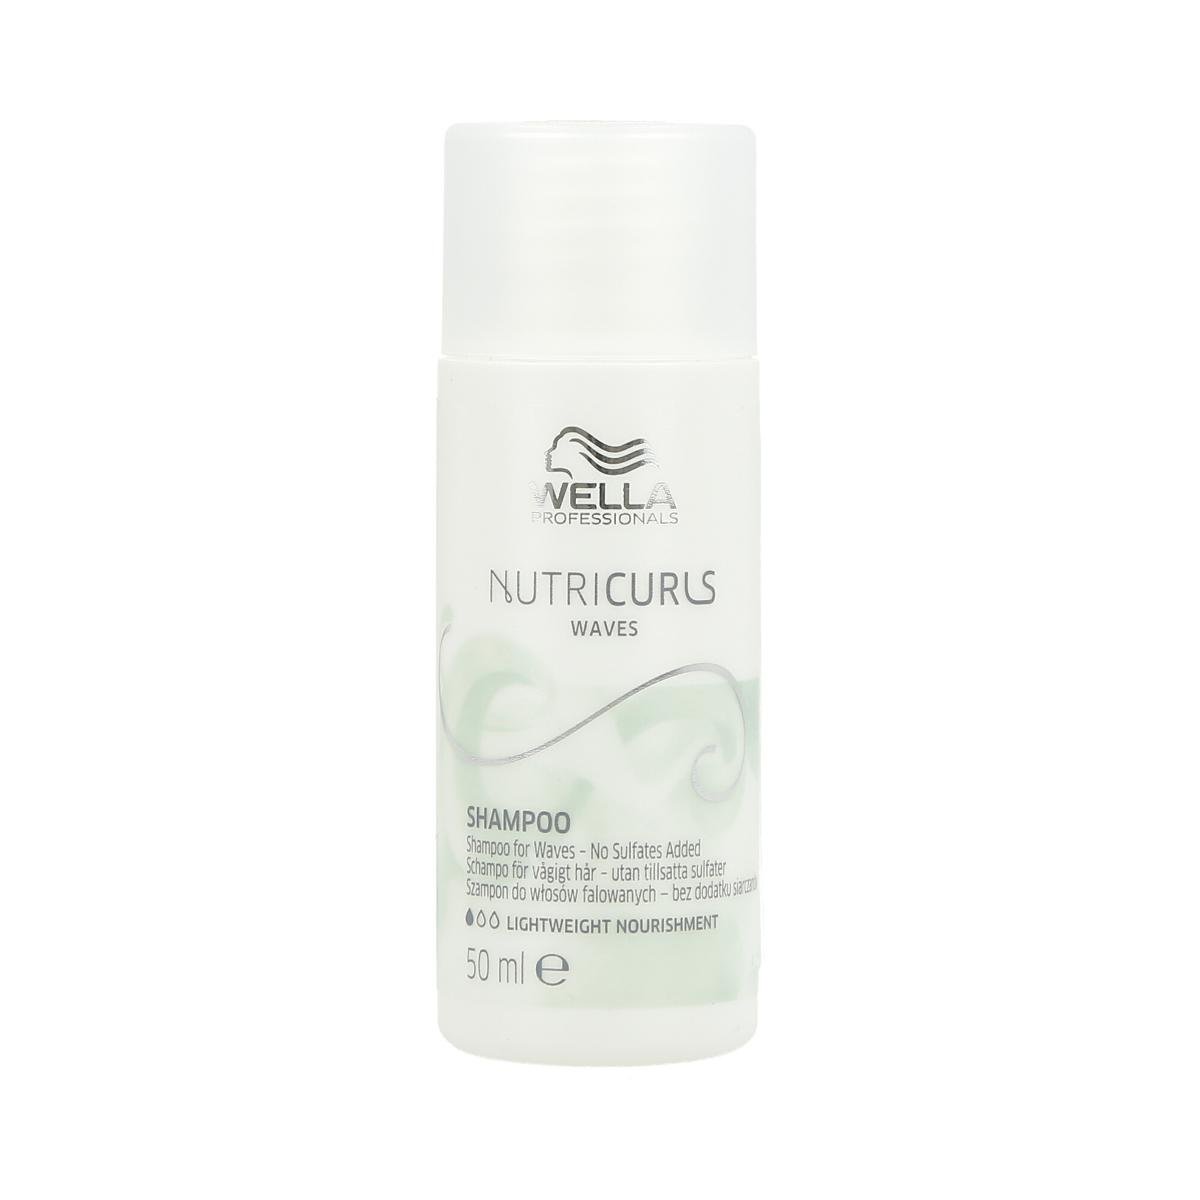 Фото - Шампунь Wella Professionals, Nutricurls, szampon do włosów falowanych, 50 ml 